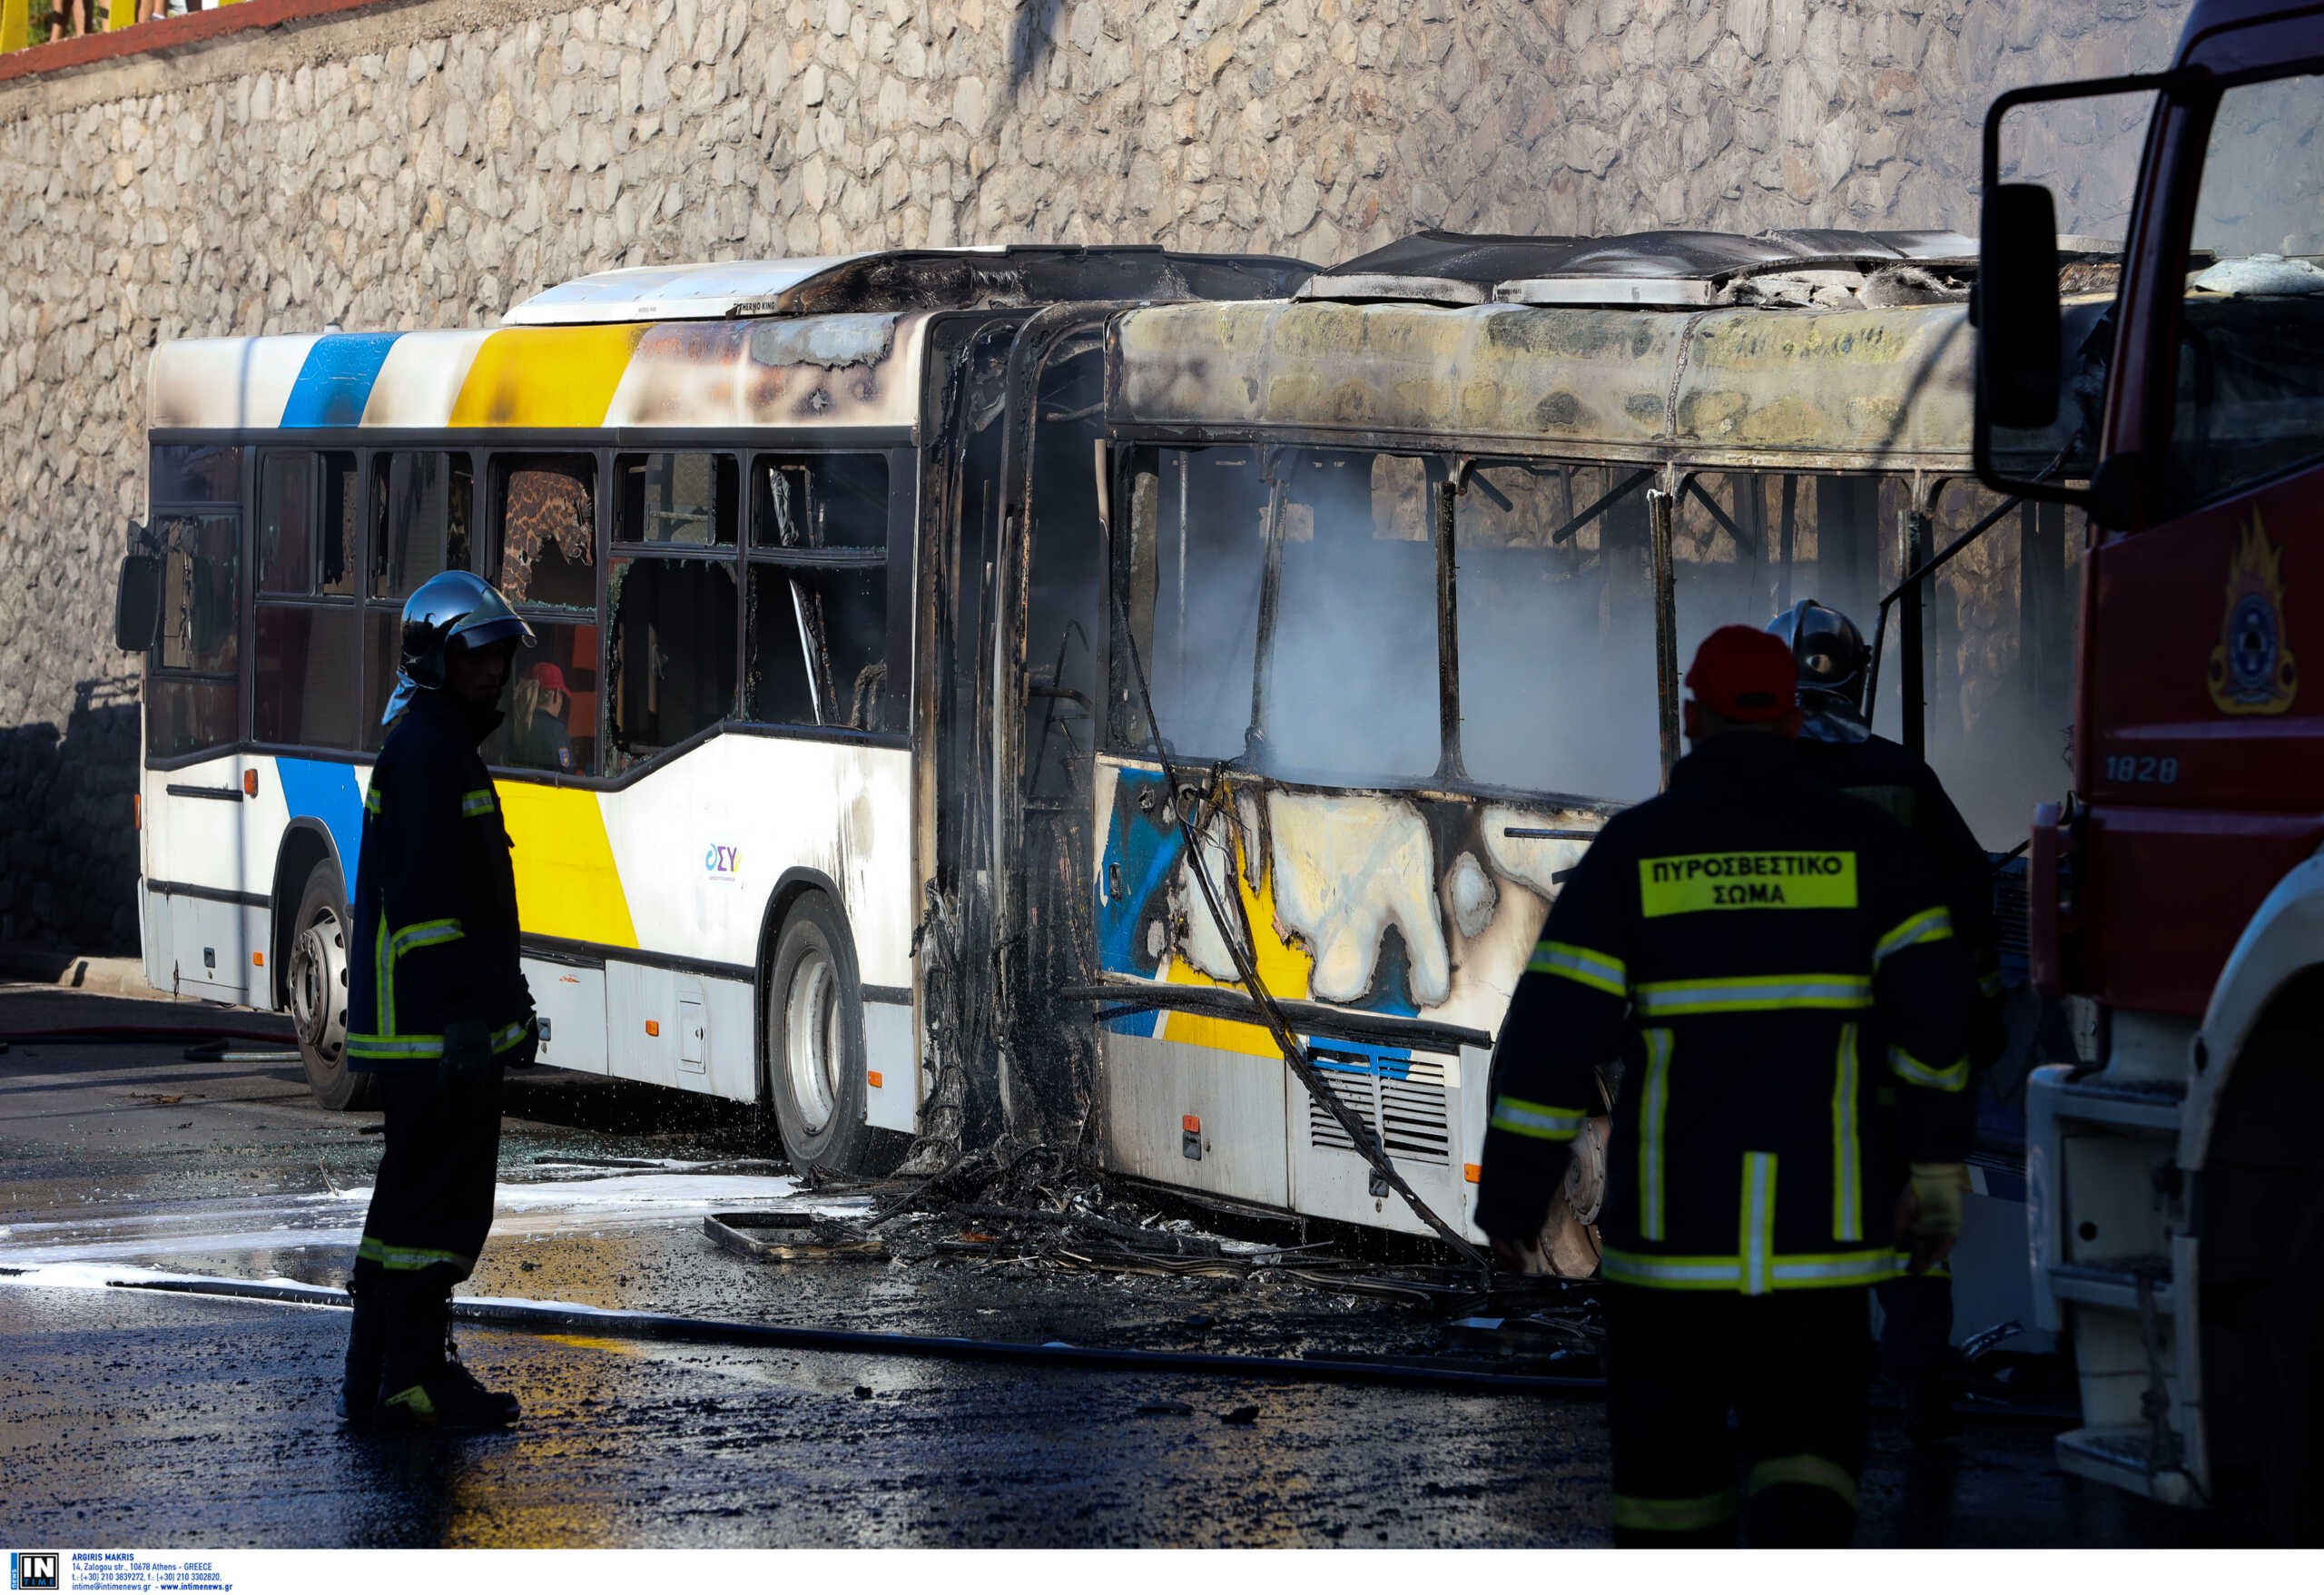 Ρέντης: Το λεωφορείο που «λαμπάδιασε» είχε συντηρηθεί και είχε περάσει χωρίς πρόβλημα την νυχτερινή επιθεώρηση